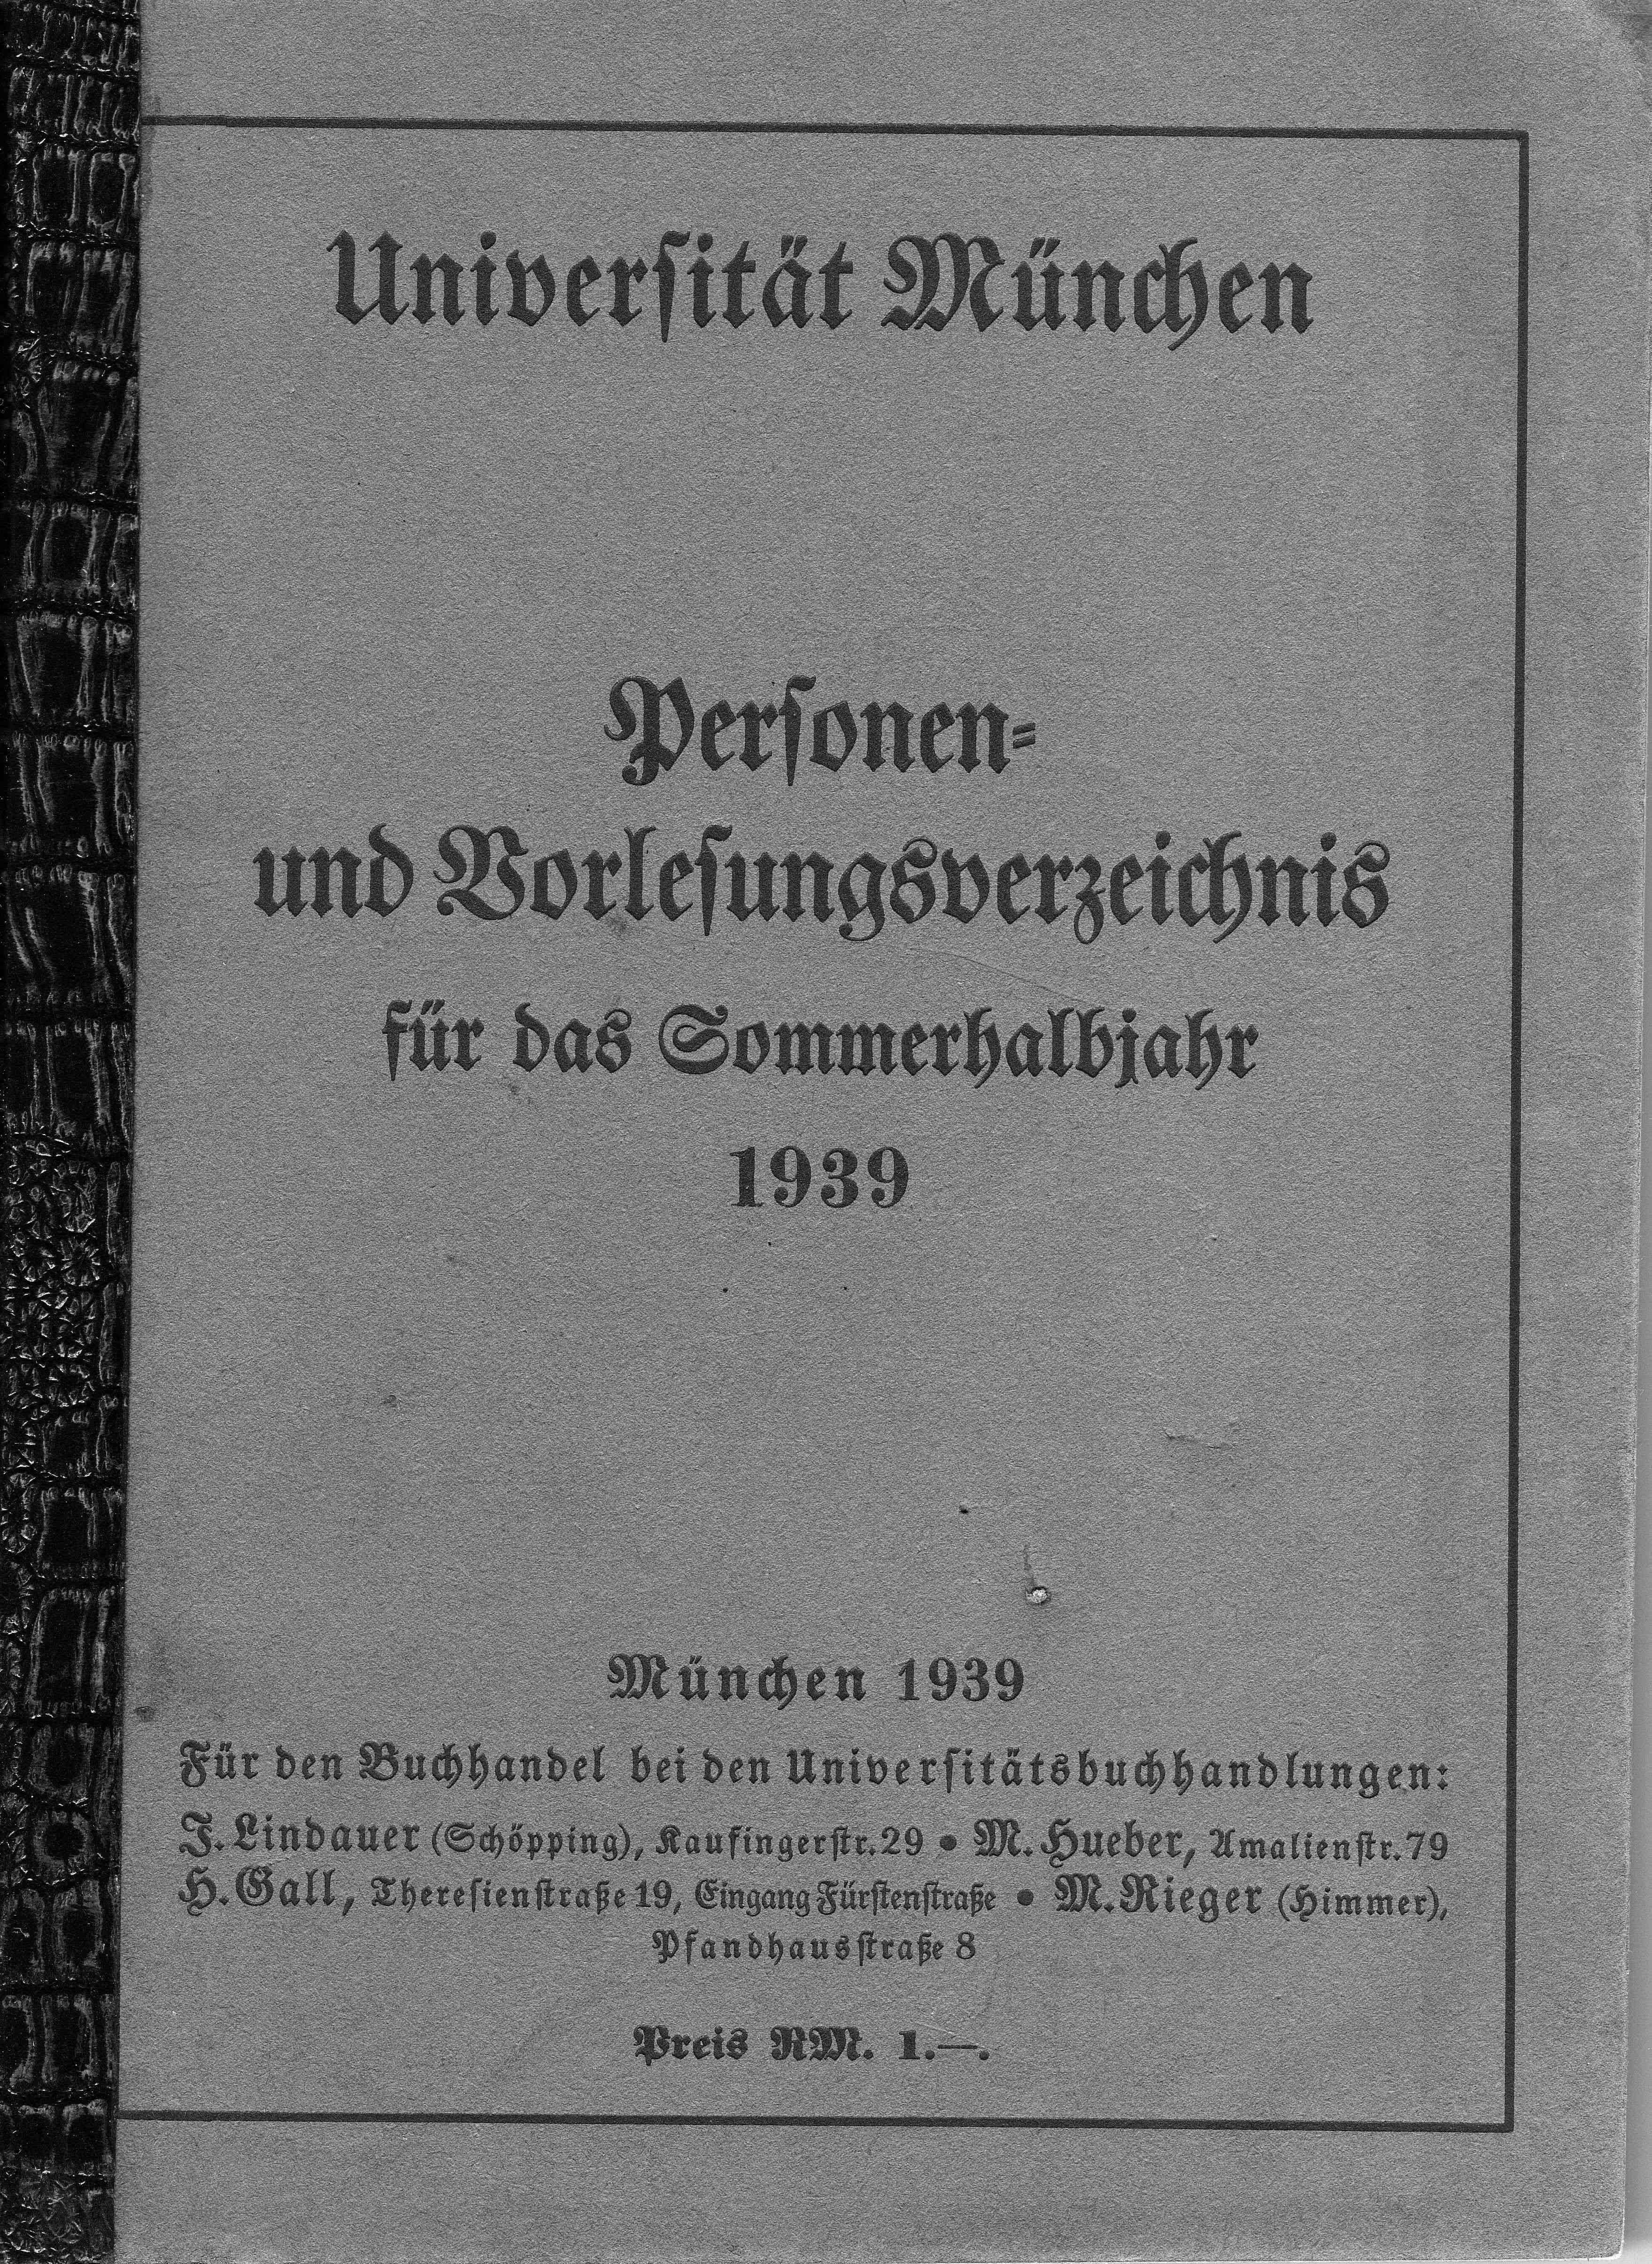 Personen und Vorlesungsverzeichnis Universität-München von 1939, in diesem Jahr beginnt das Studium für den Widerstandskreis in Medizin, Privatbesitz